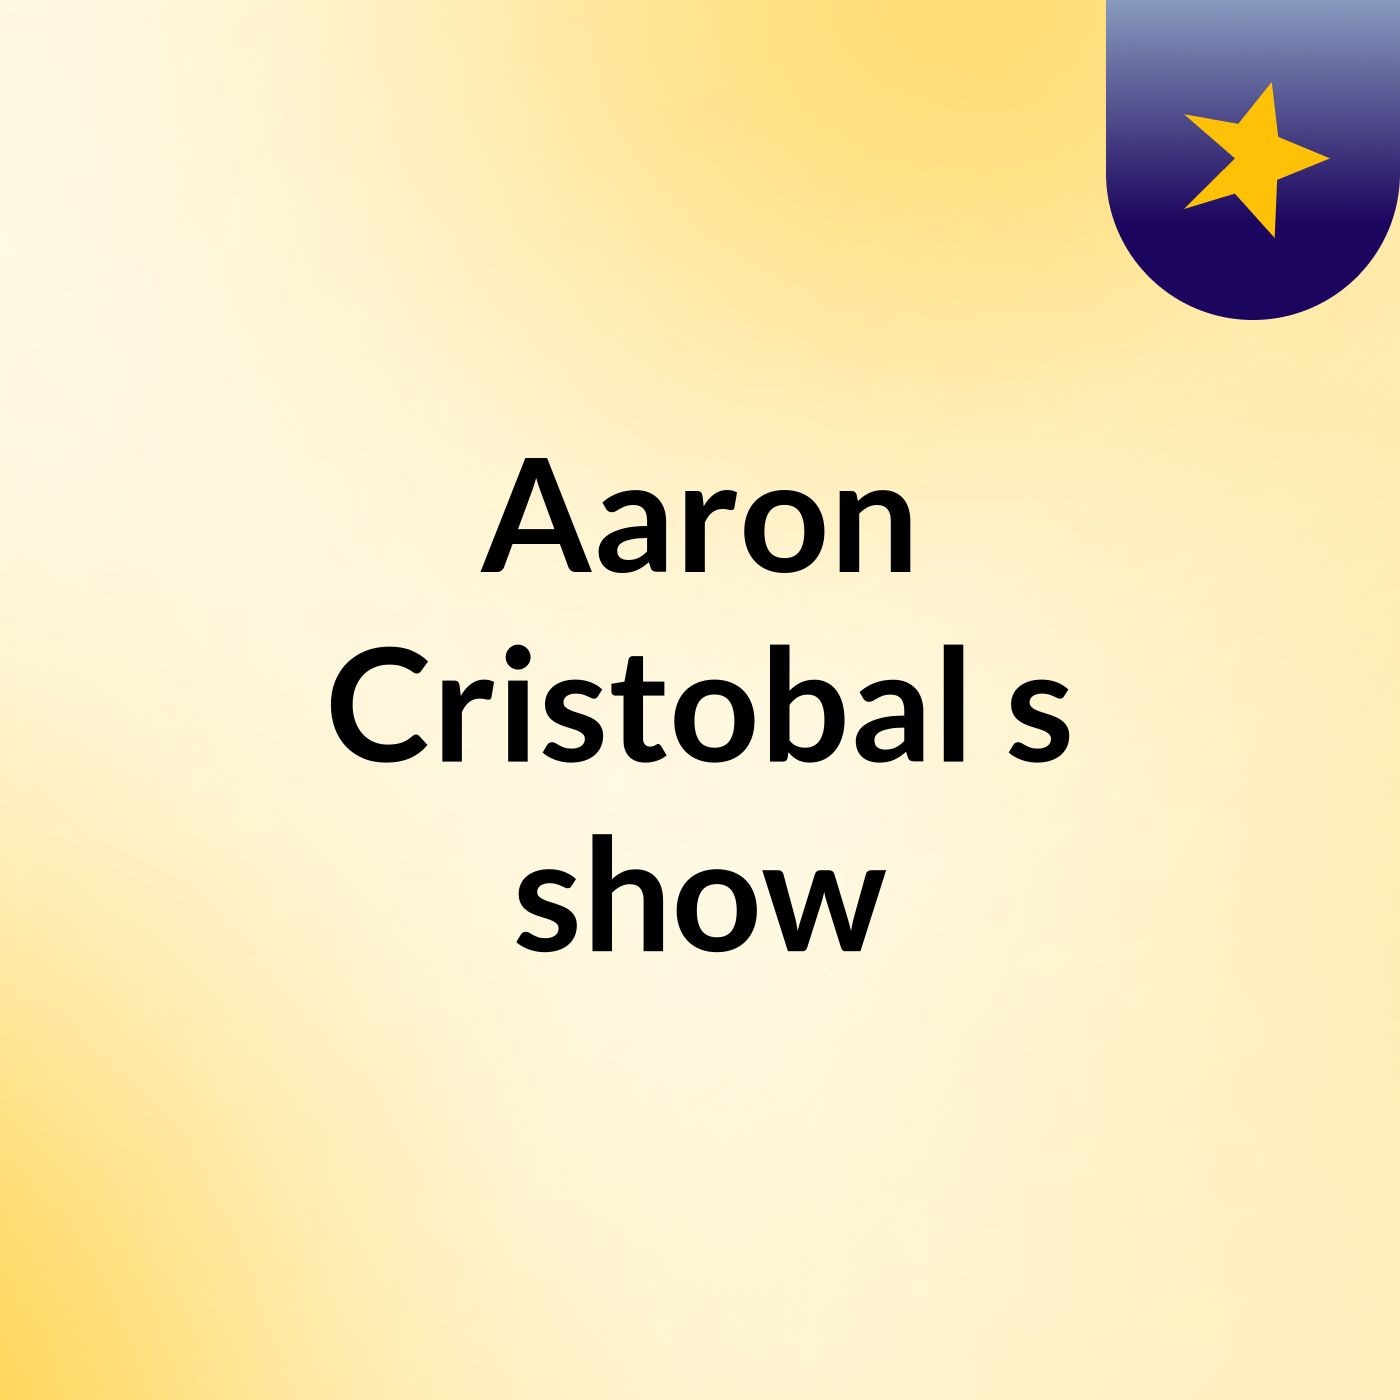 Aaron Cristobal's show